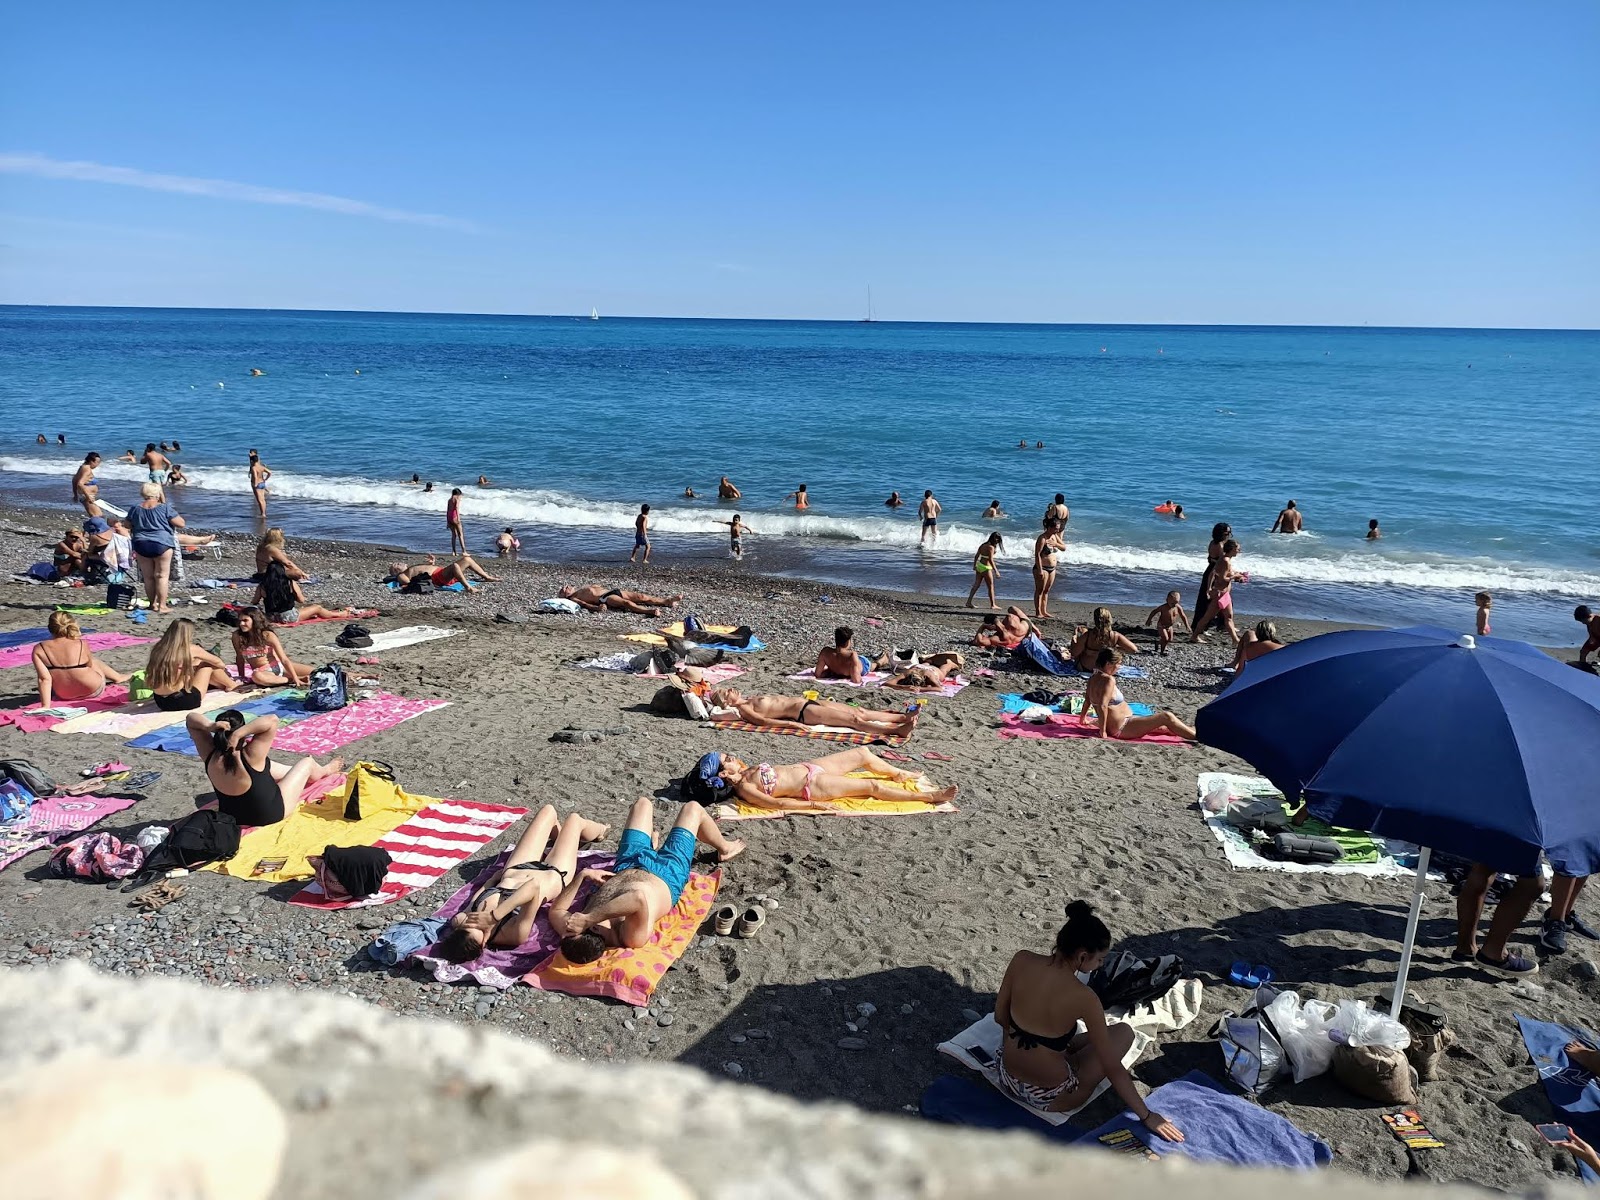 Spiaggia Sturla'in fotoğrafı plaj tatil beldesi alanı